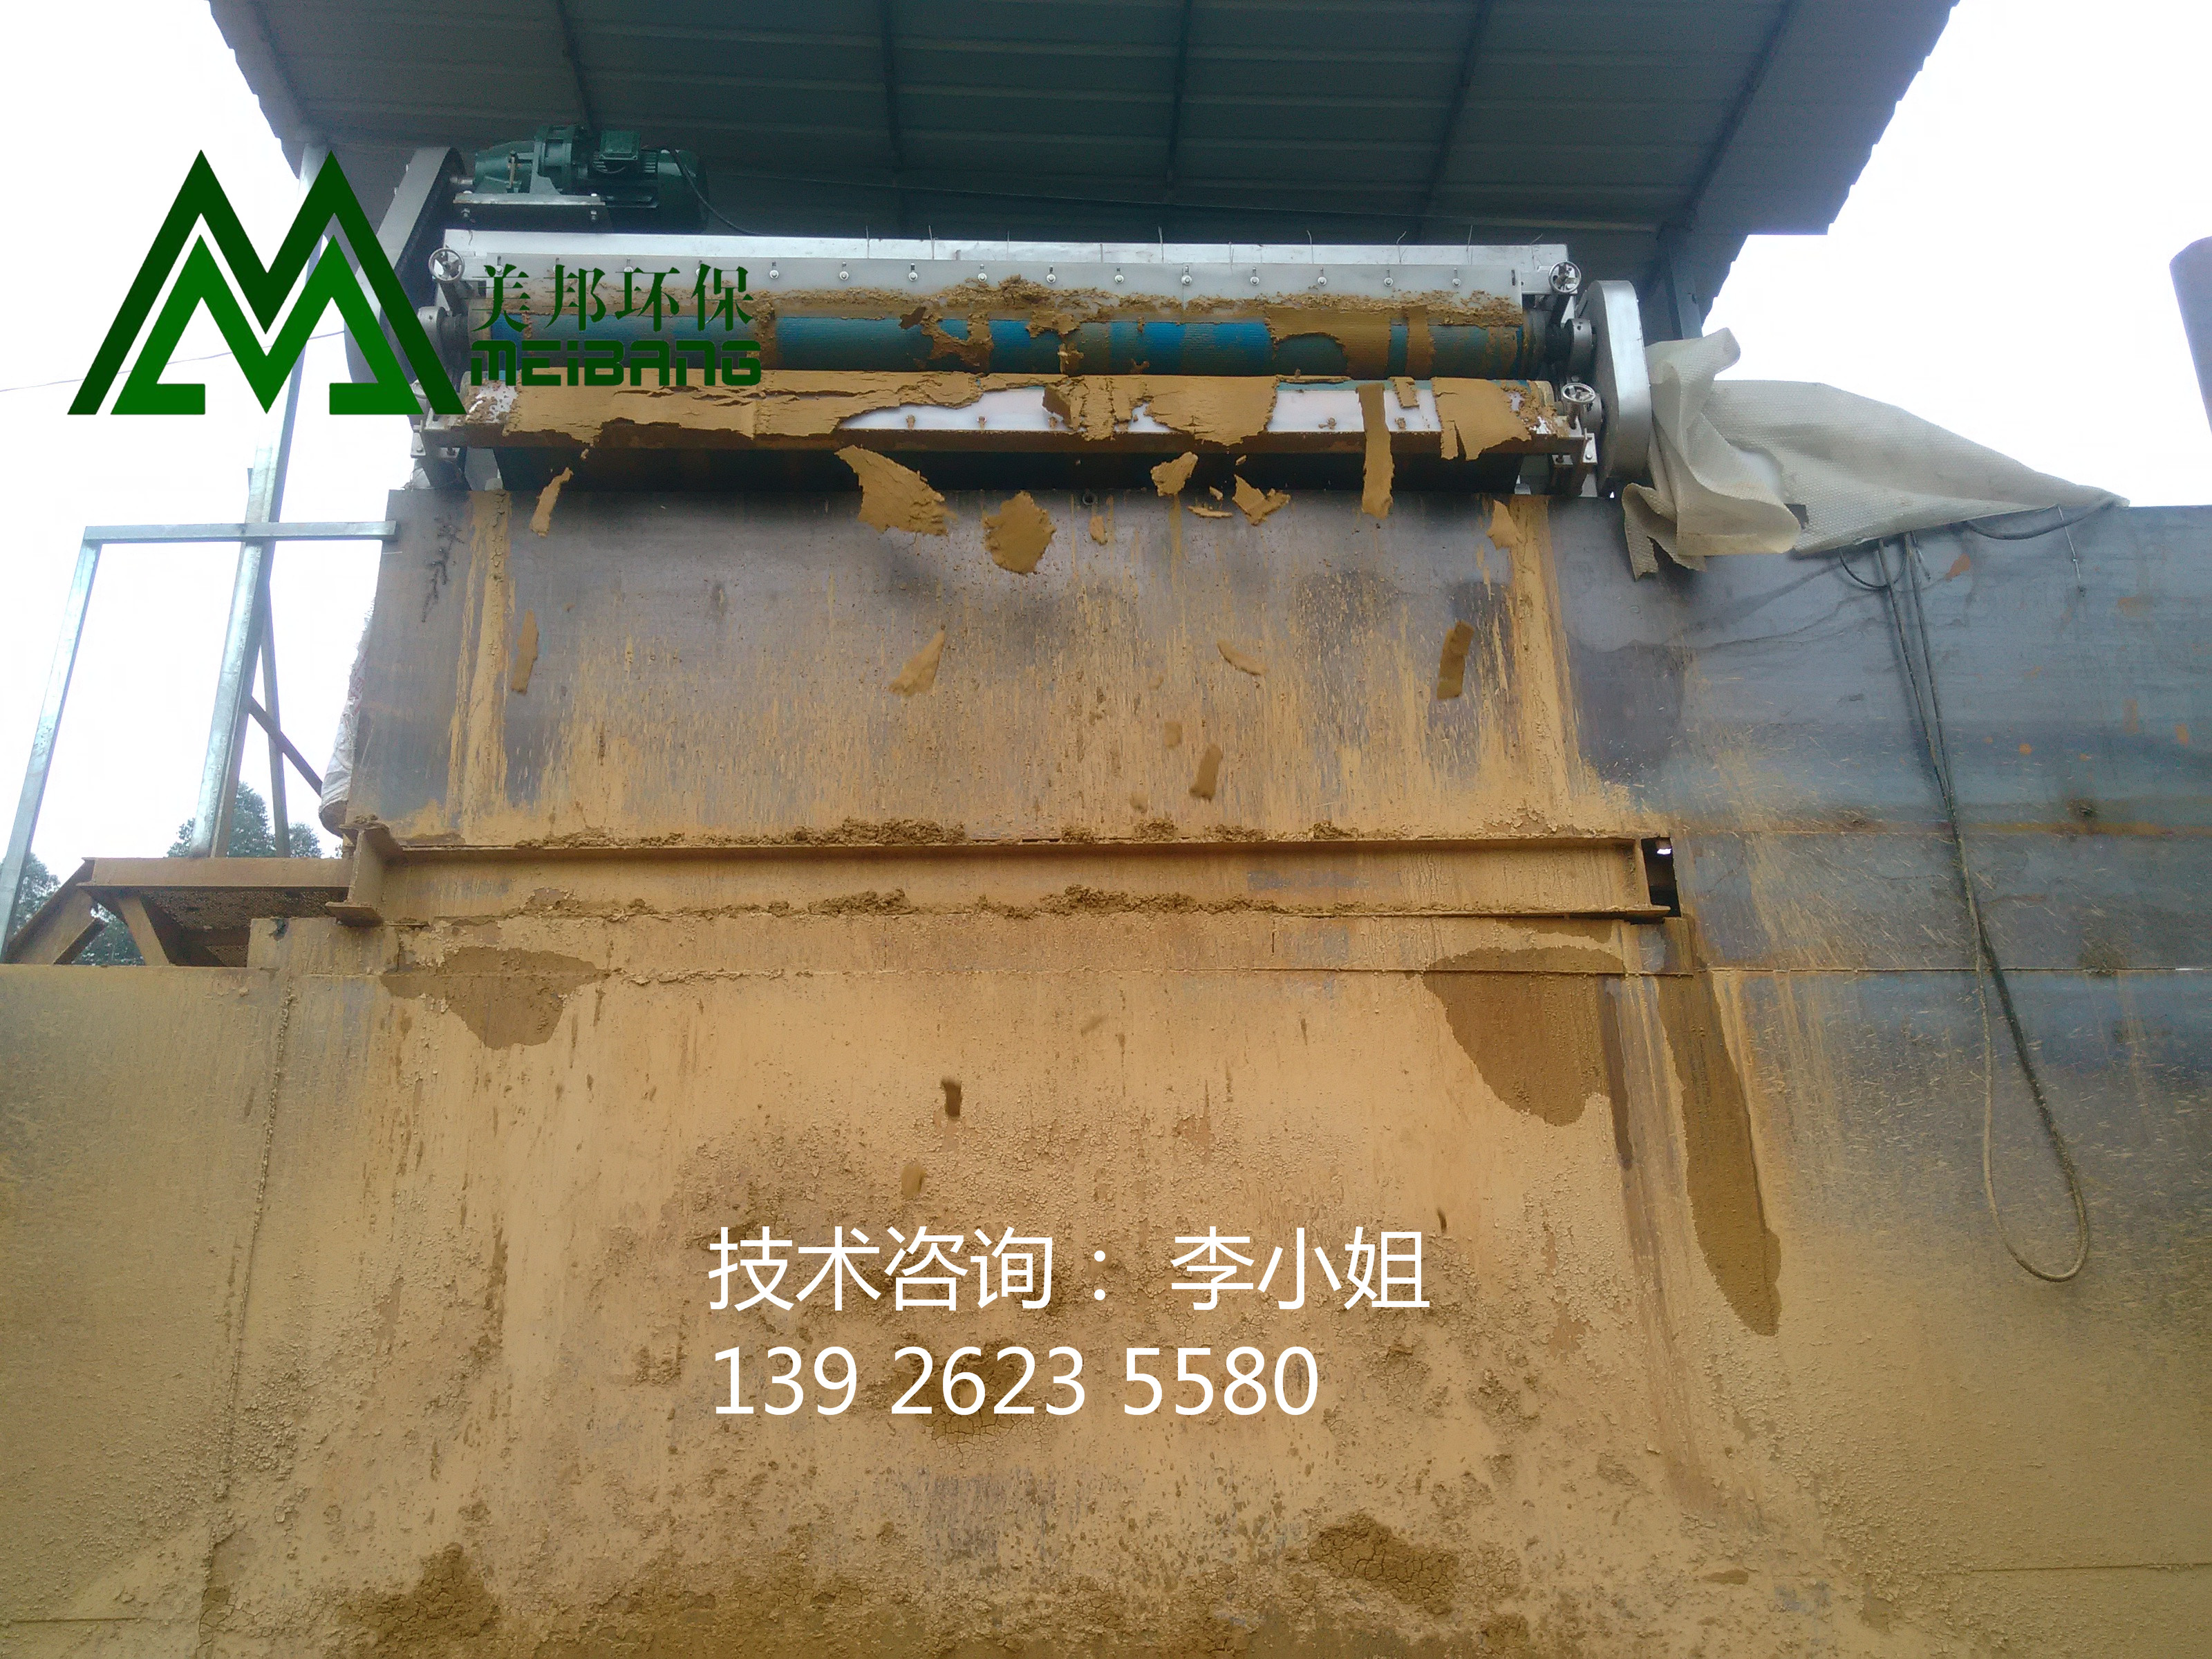 供应广州洗沙污泥脱水机,供应洗沙污泥脱水机厂家图片